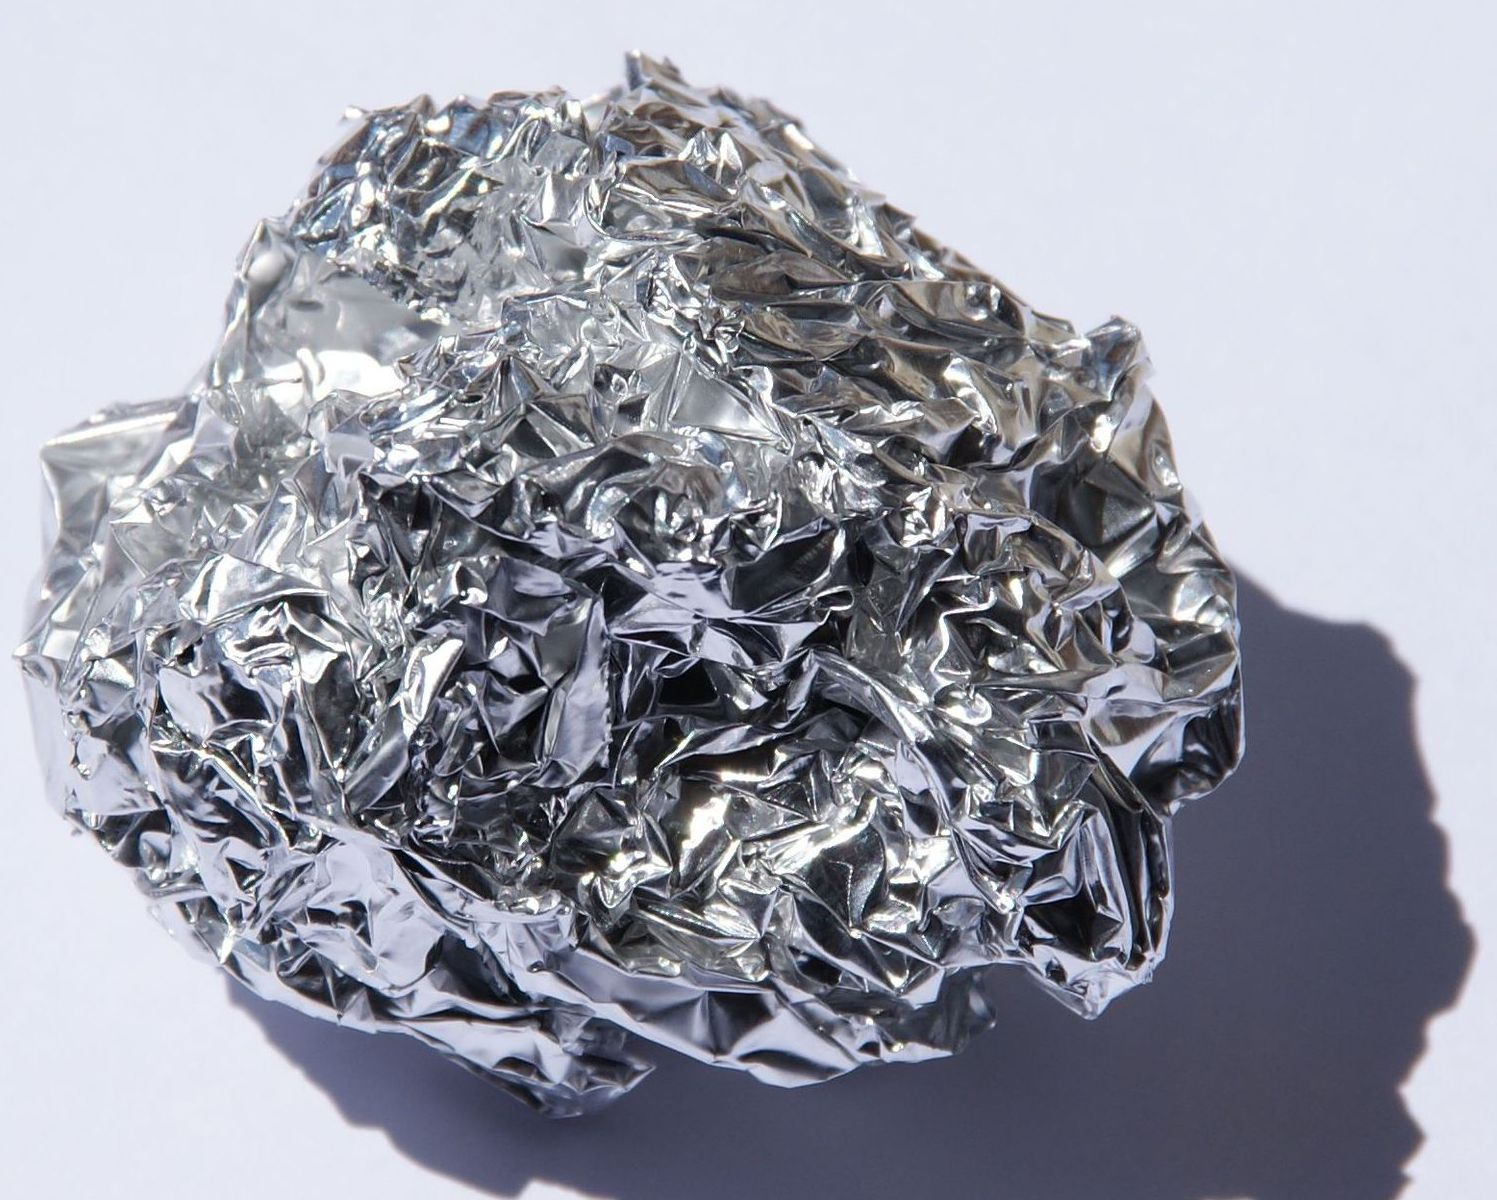 Доступное железо. Дюраль алюминий сплав. Алюминий хим элемент. Сплавы алюминий-медь-кремний. Алюминий a5n.